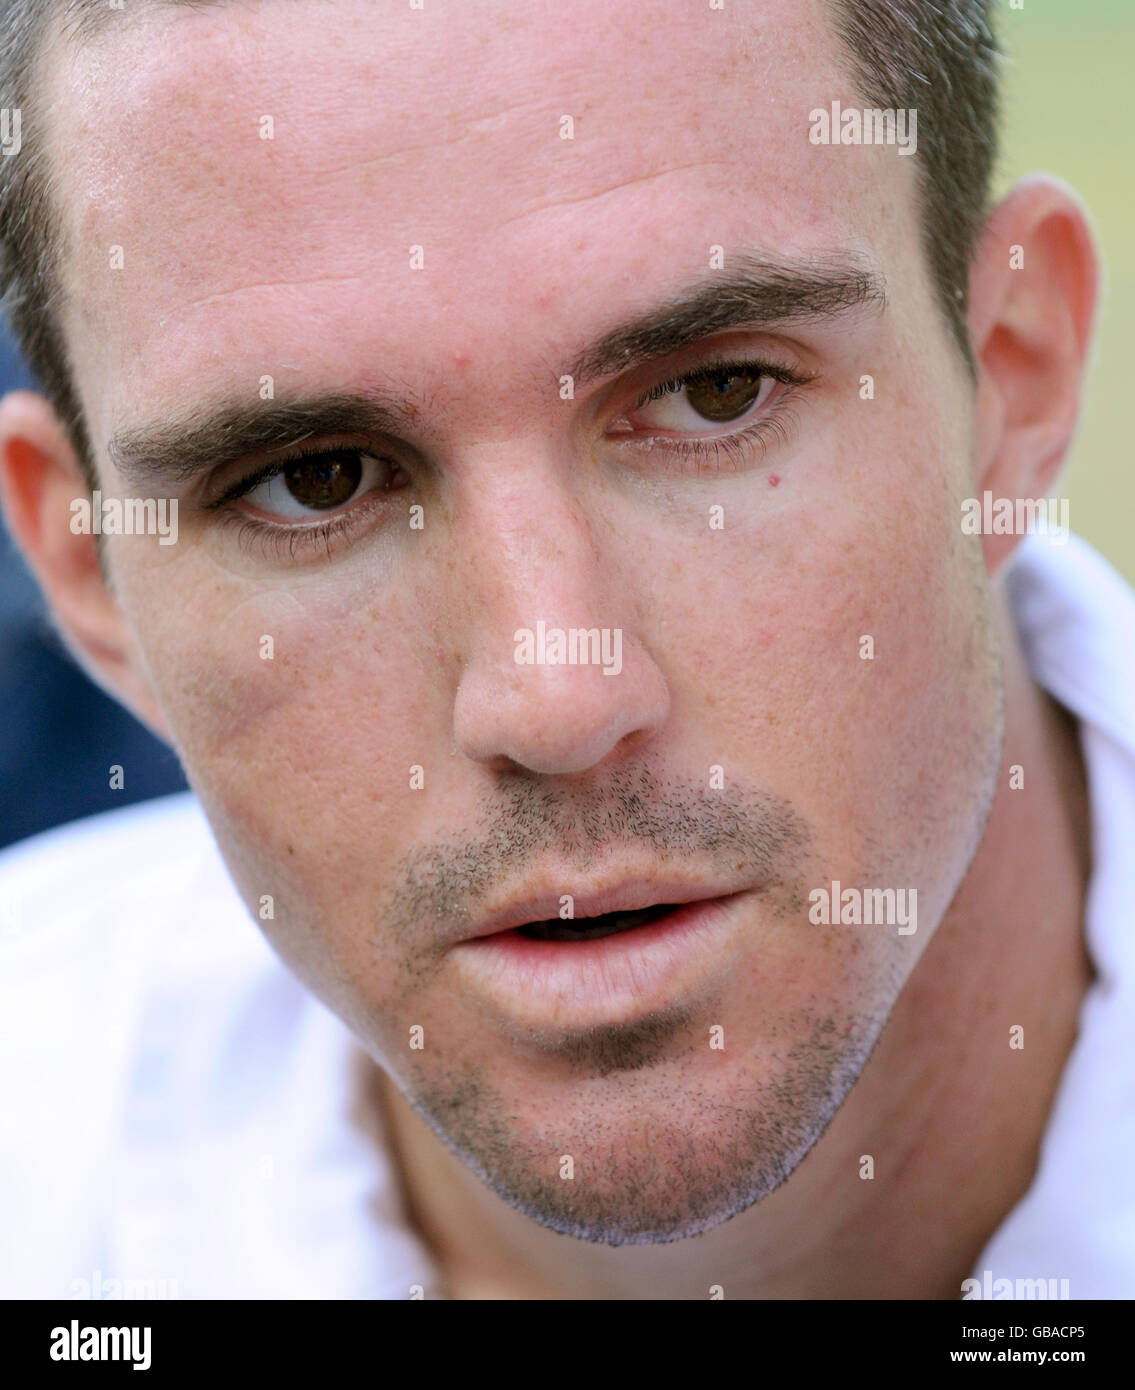 Kevin Pietersen, en Angleterre, parle aux médias lors d'une session de filets au Punjab Cricket Association Stadium, Mohali, en Inde. Banque D'Images